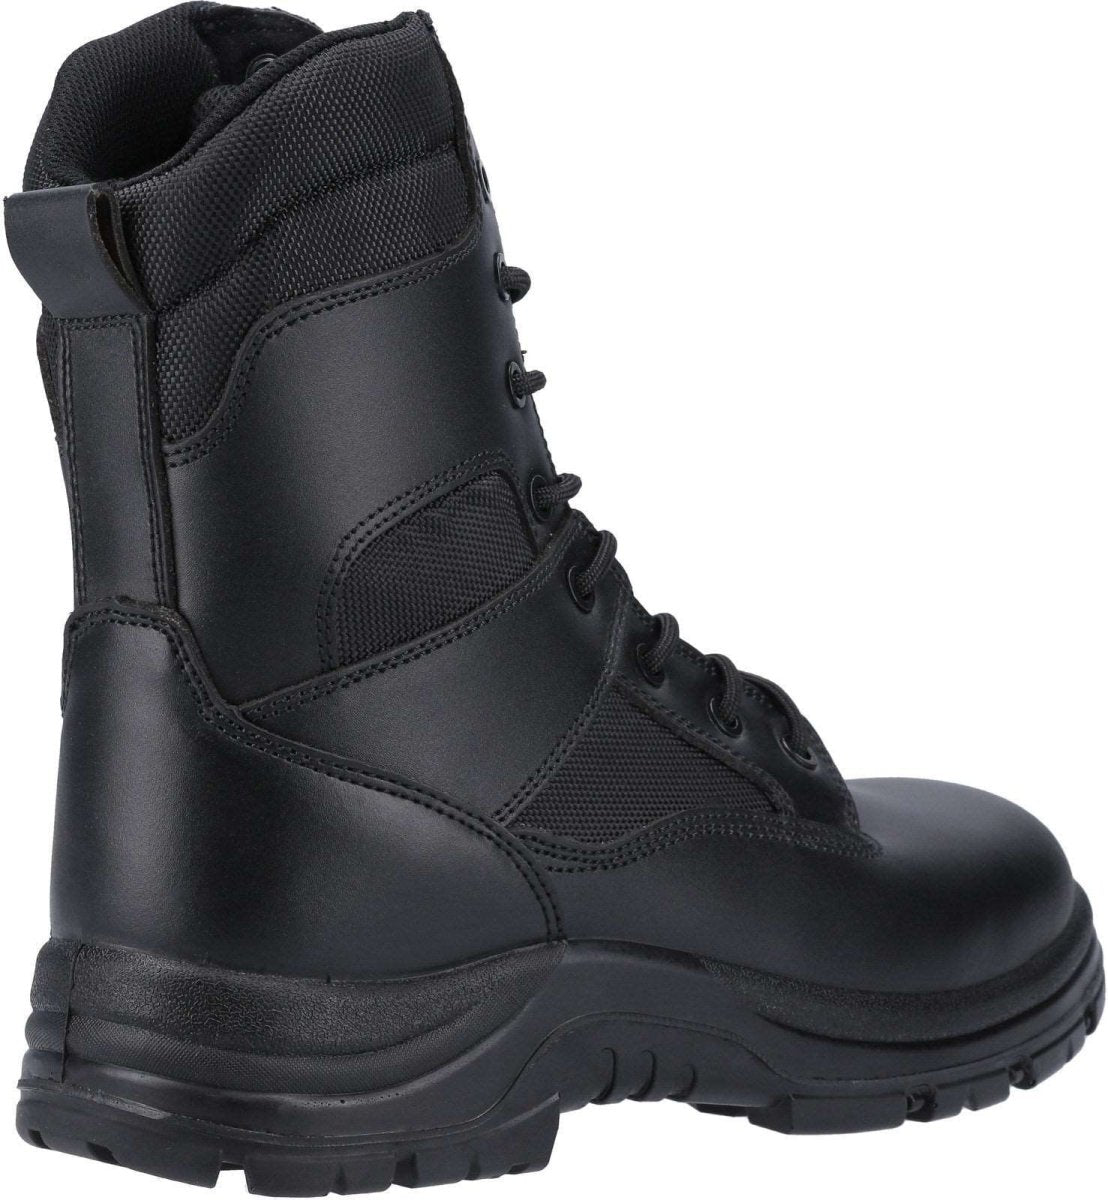 Amblers FS009C Hi-Leg Composite Toe & Midsole Safety Boots - Shoe Store Direct